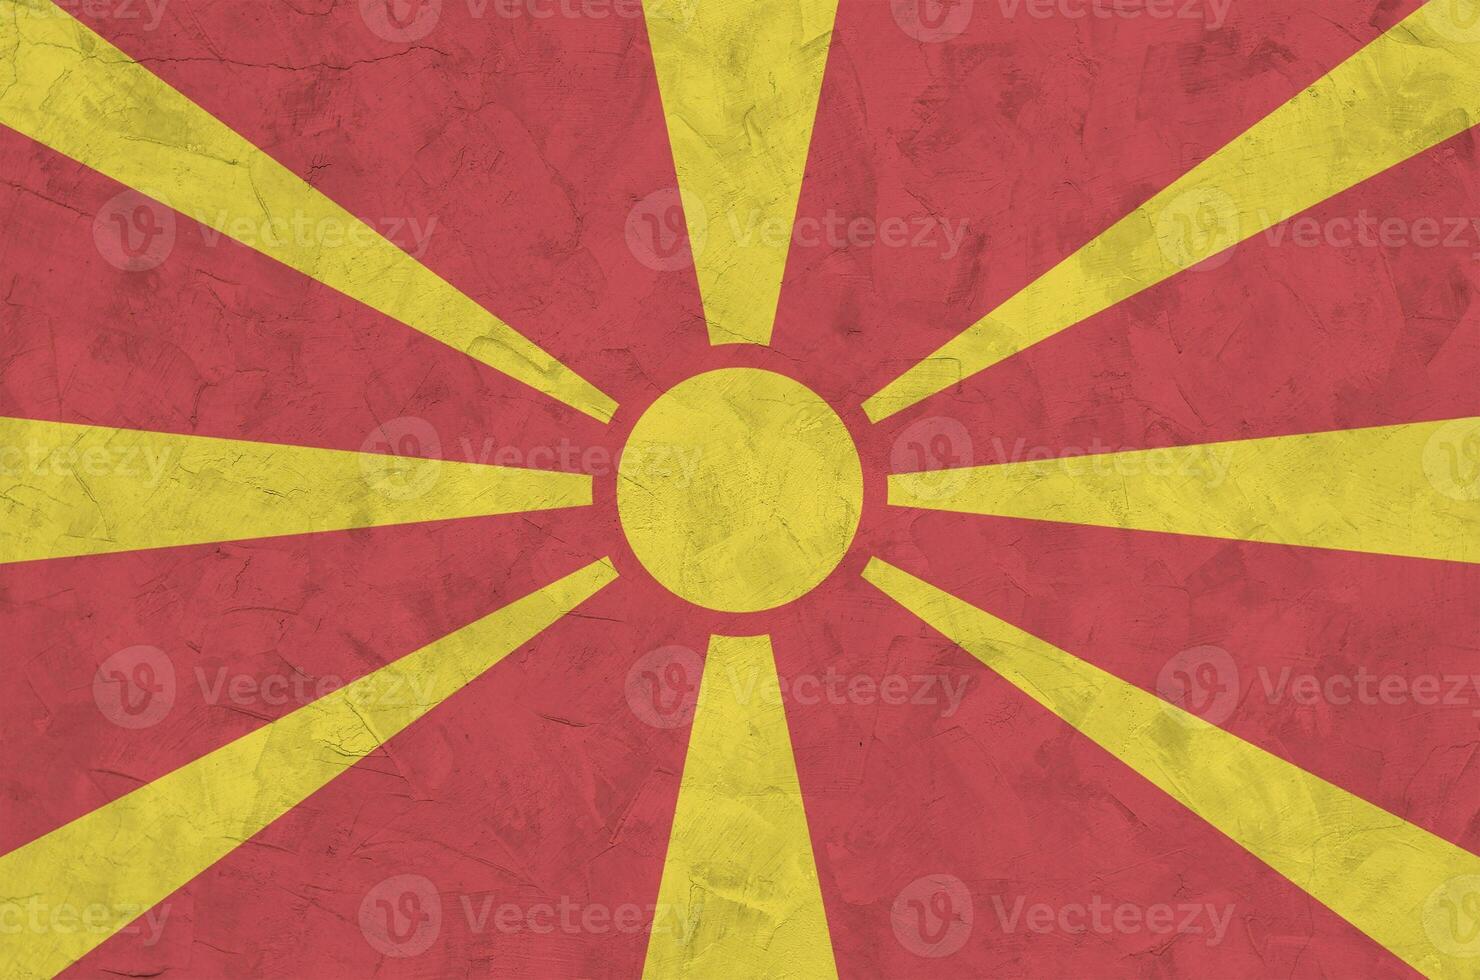 macedonia flagga avbildad i ljus måla färger på gammal lättnad putsning vägg. texturerad baner på grov bakgrund foto